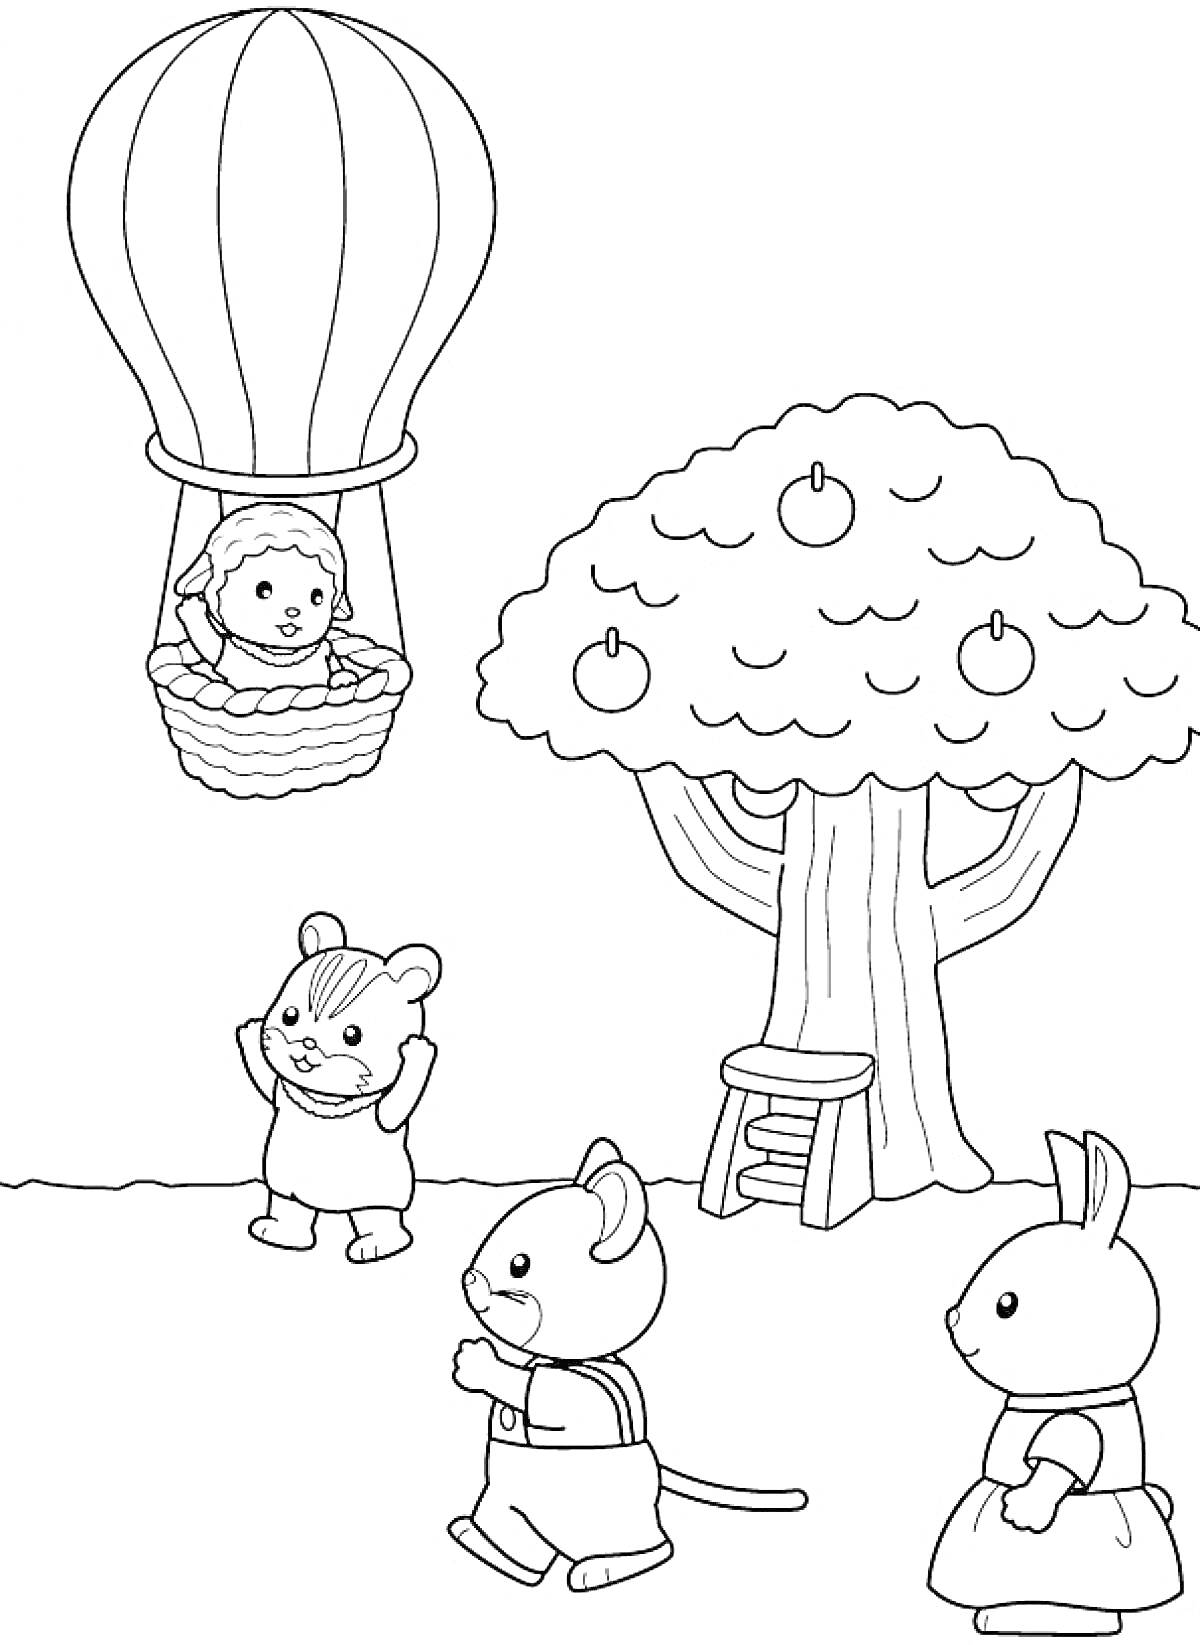 Раскраска Воздушный шар, яблоня с лестницей и три животных